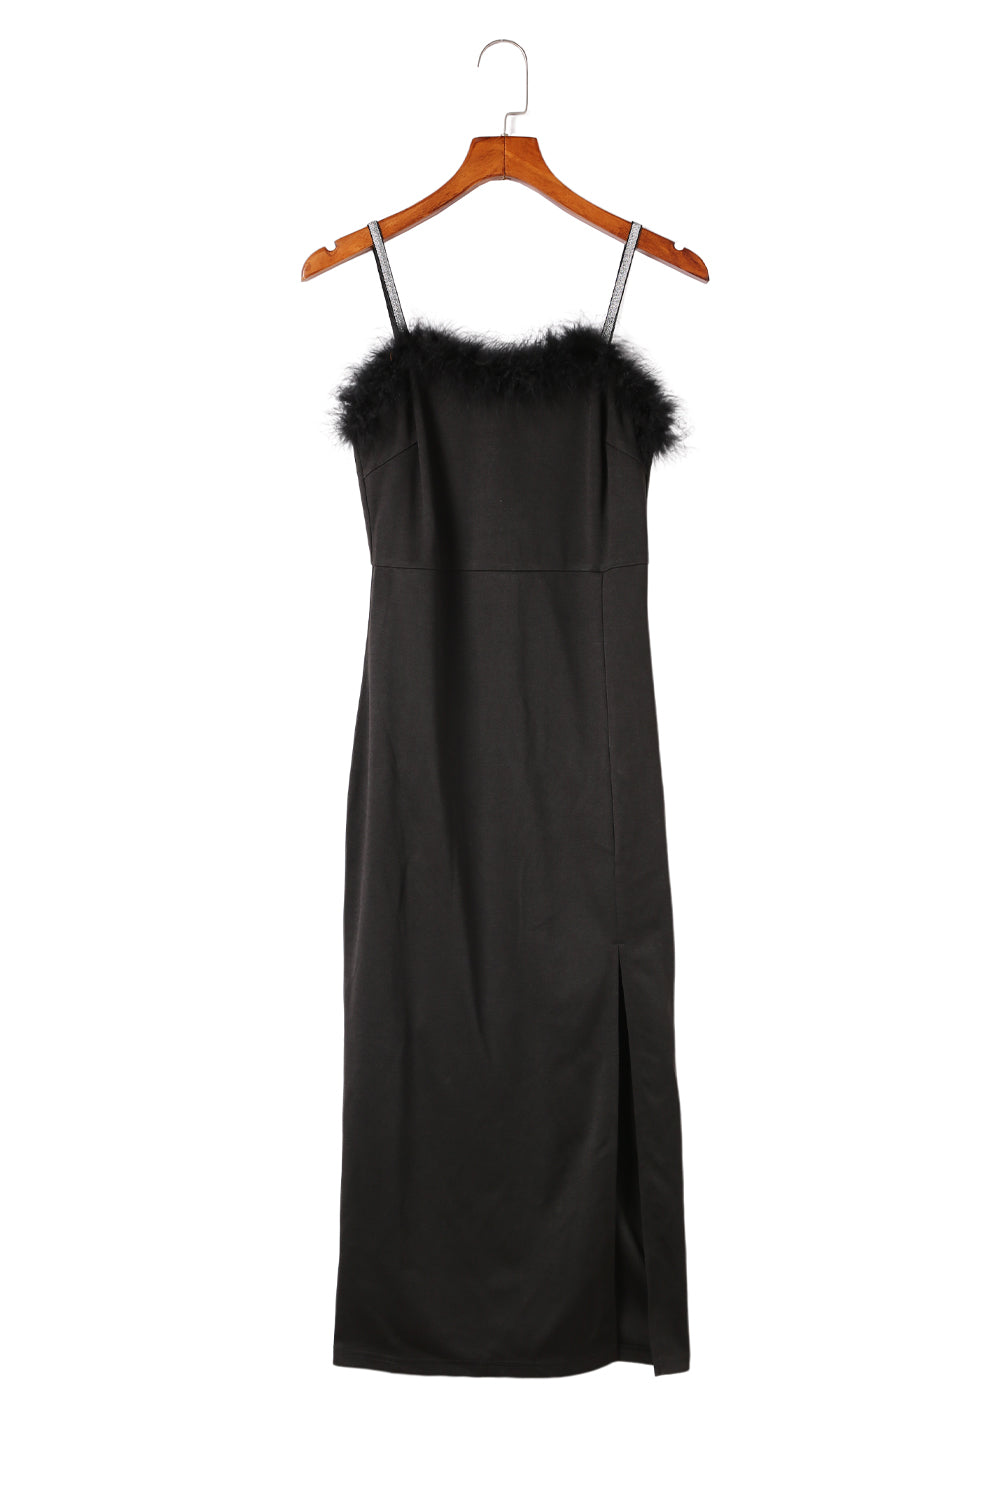 Crna midi haljina s prorezom na naramenice s perjem obrubljenim naramenicama